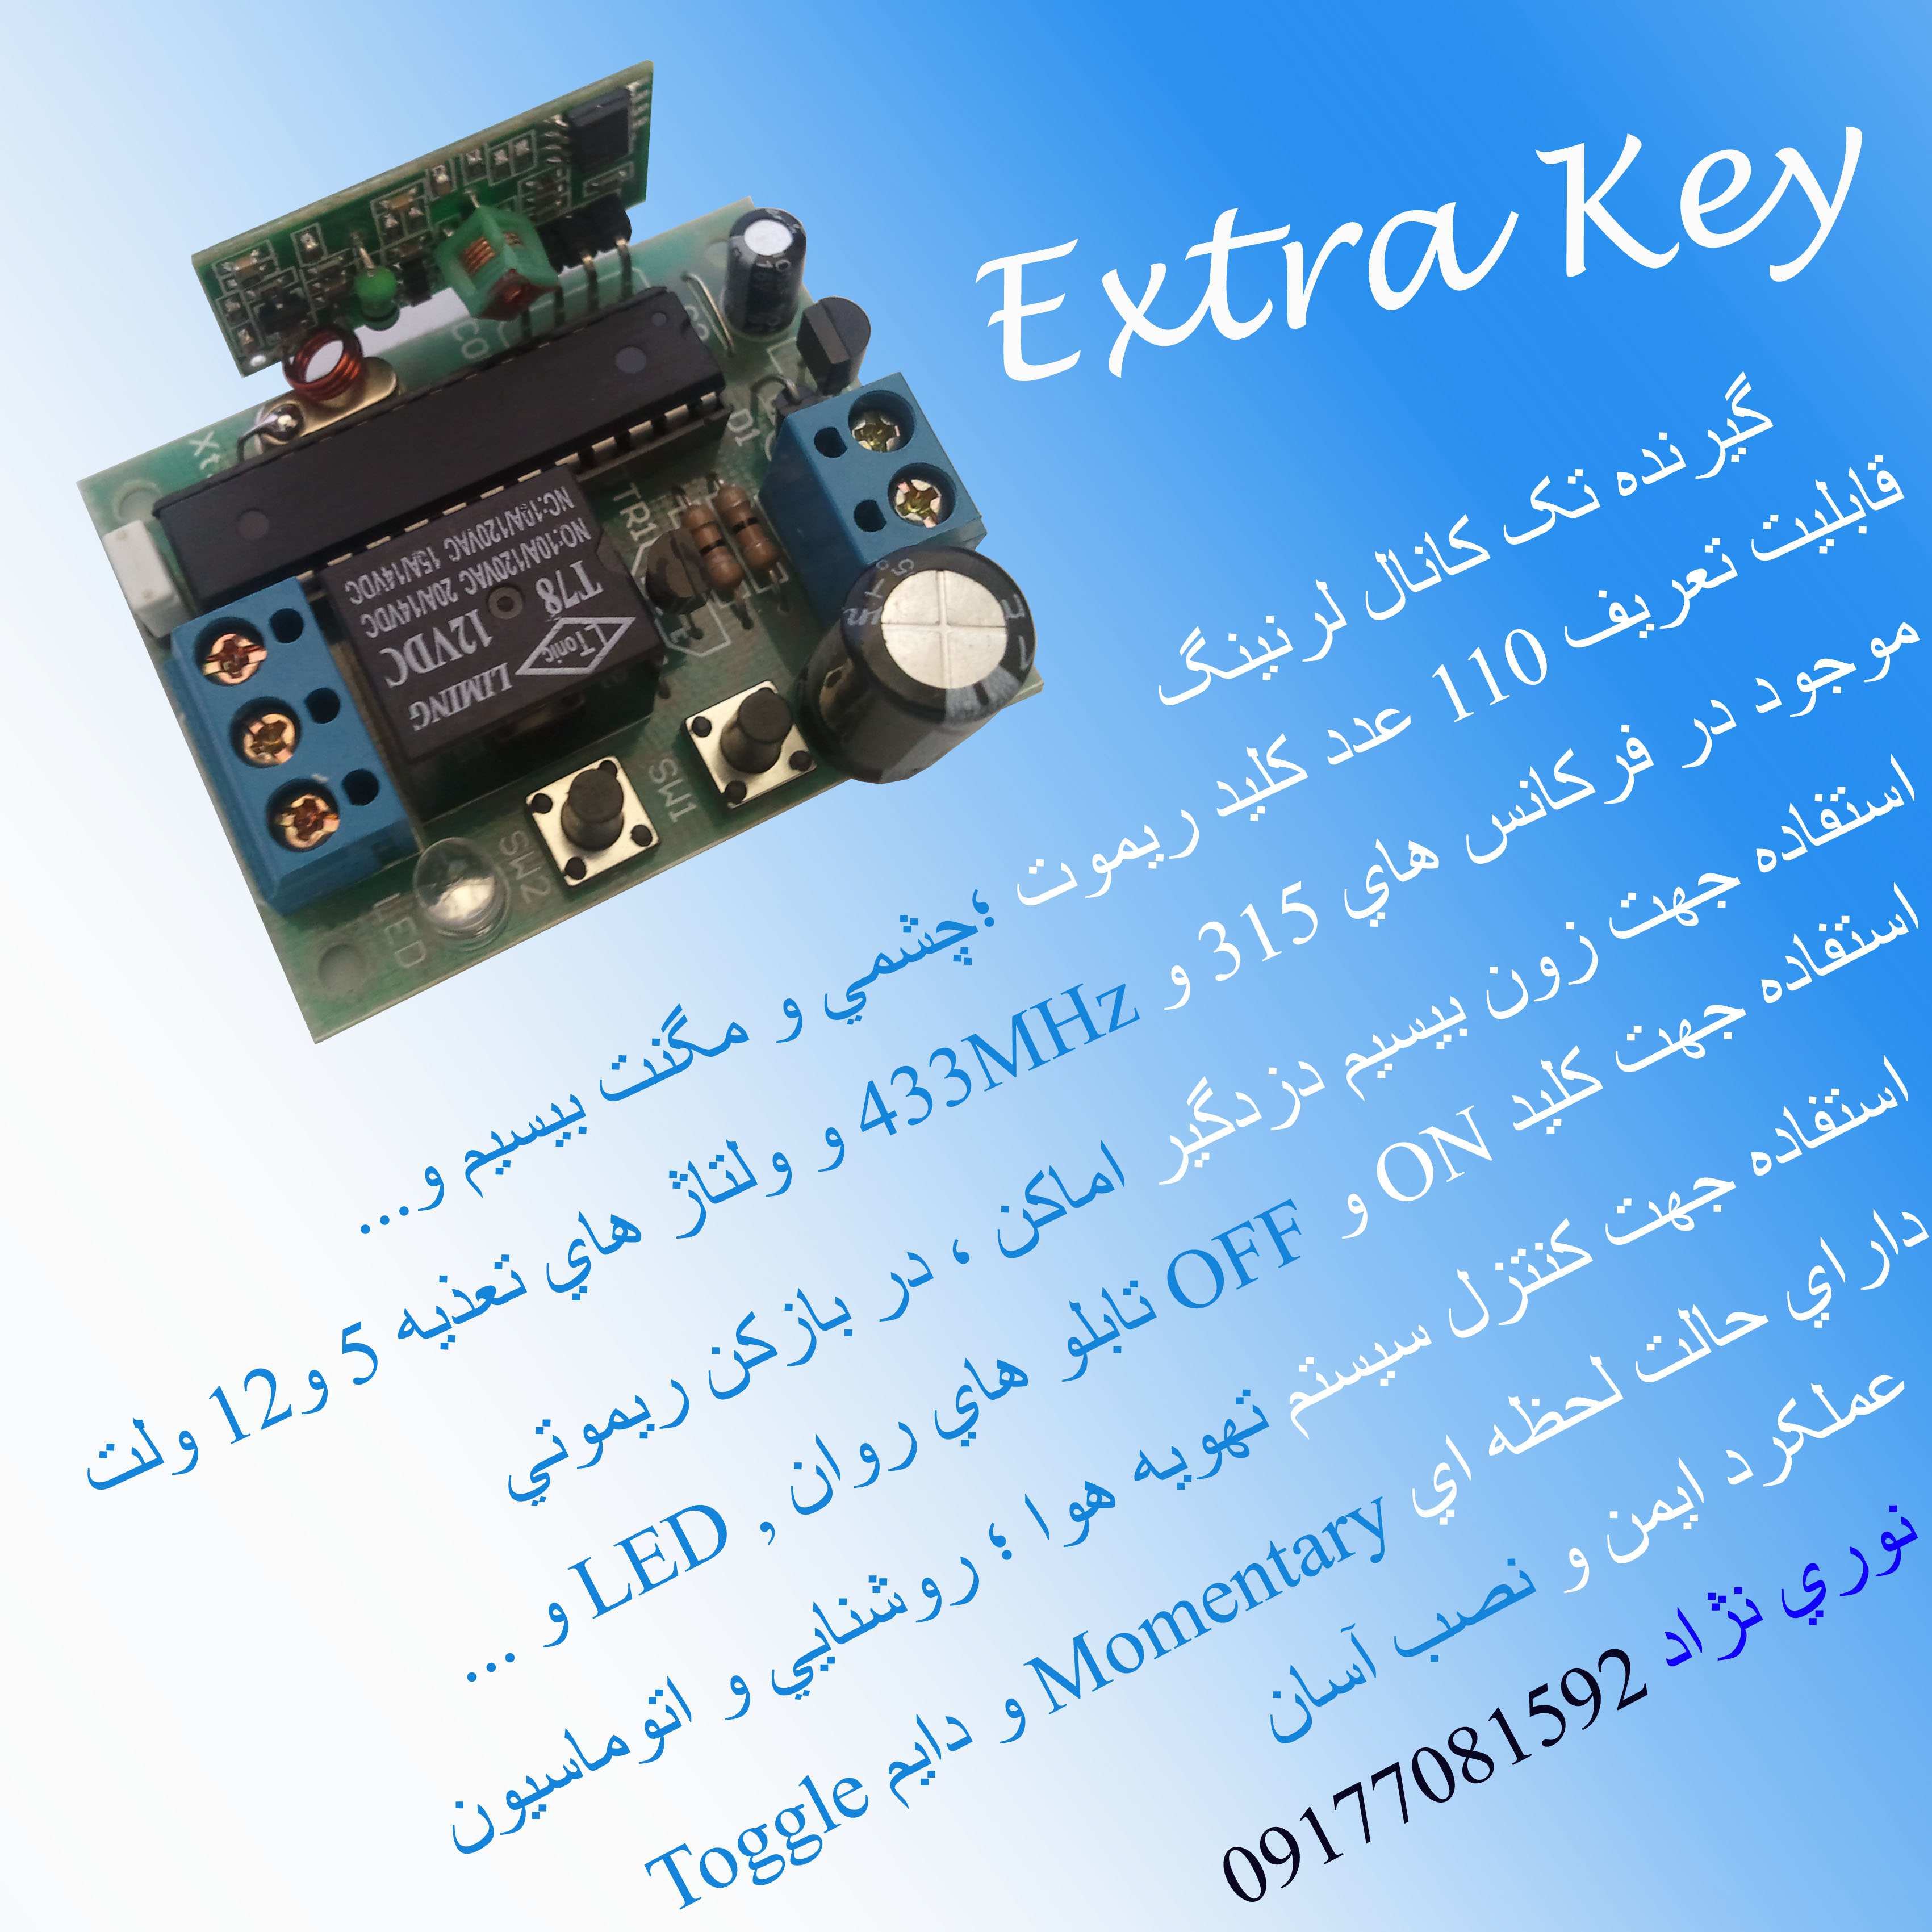 Extra Key